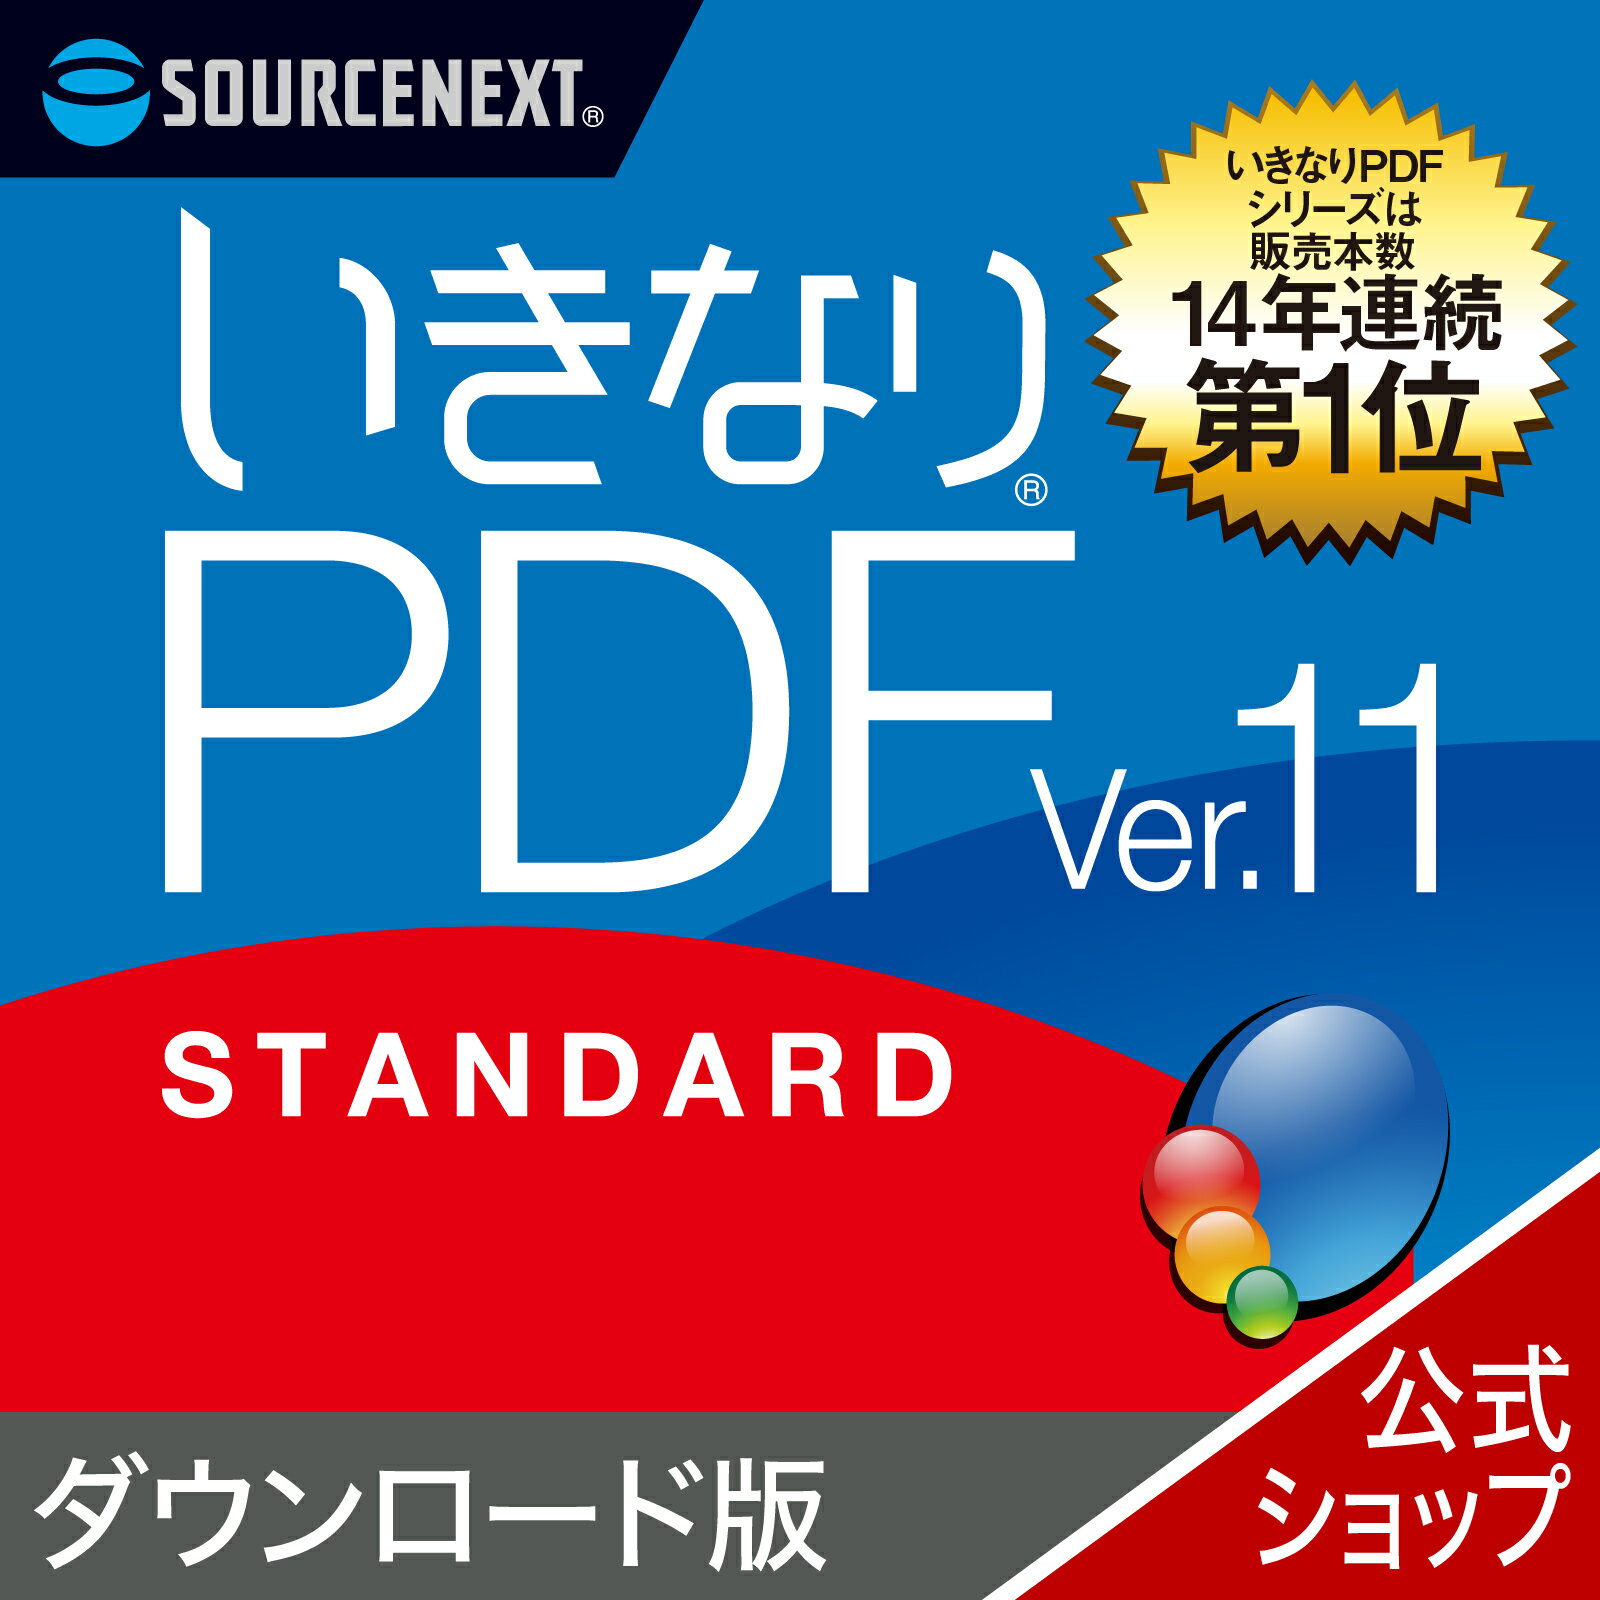 【スーパーセール限定価格】【公式】いきなりPDF Ver.11 STANDARD 【ダウンロード版】DL_SNR [Windows用][PDF作成・編集ソフト] 送料無料 ソースネクスト PDF作成ソフト PDF編集 PDF PDF編集ソ…